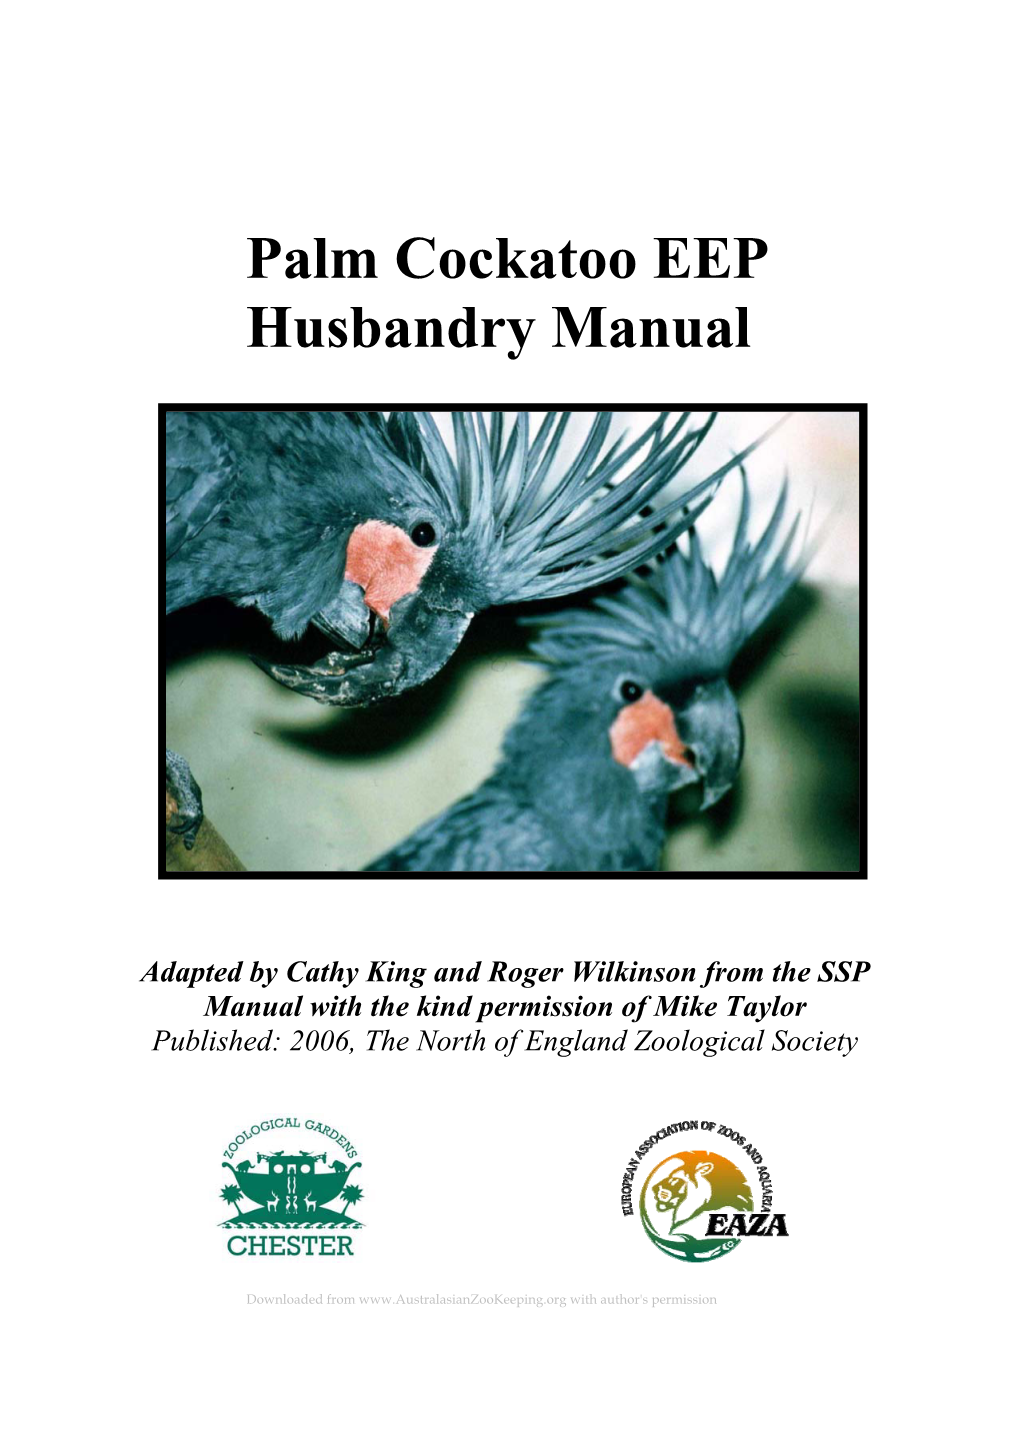 Palm Cockatoo EEP Husbandry Manual